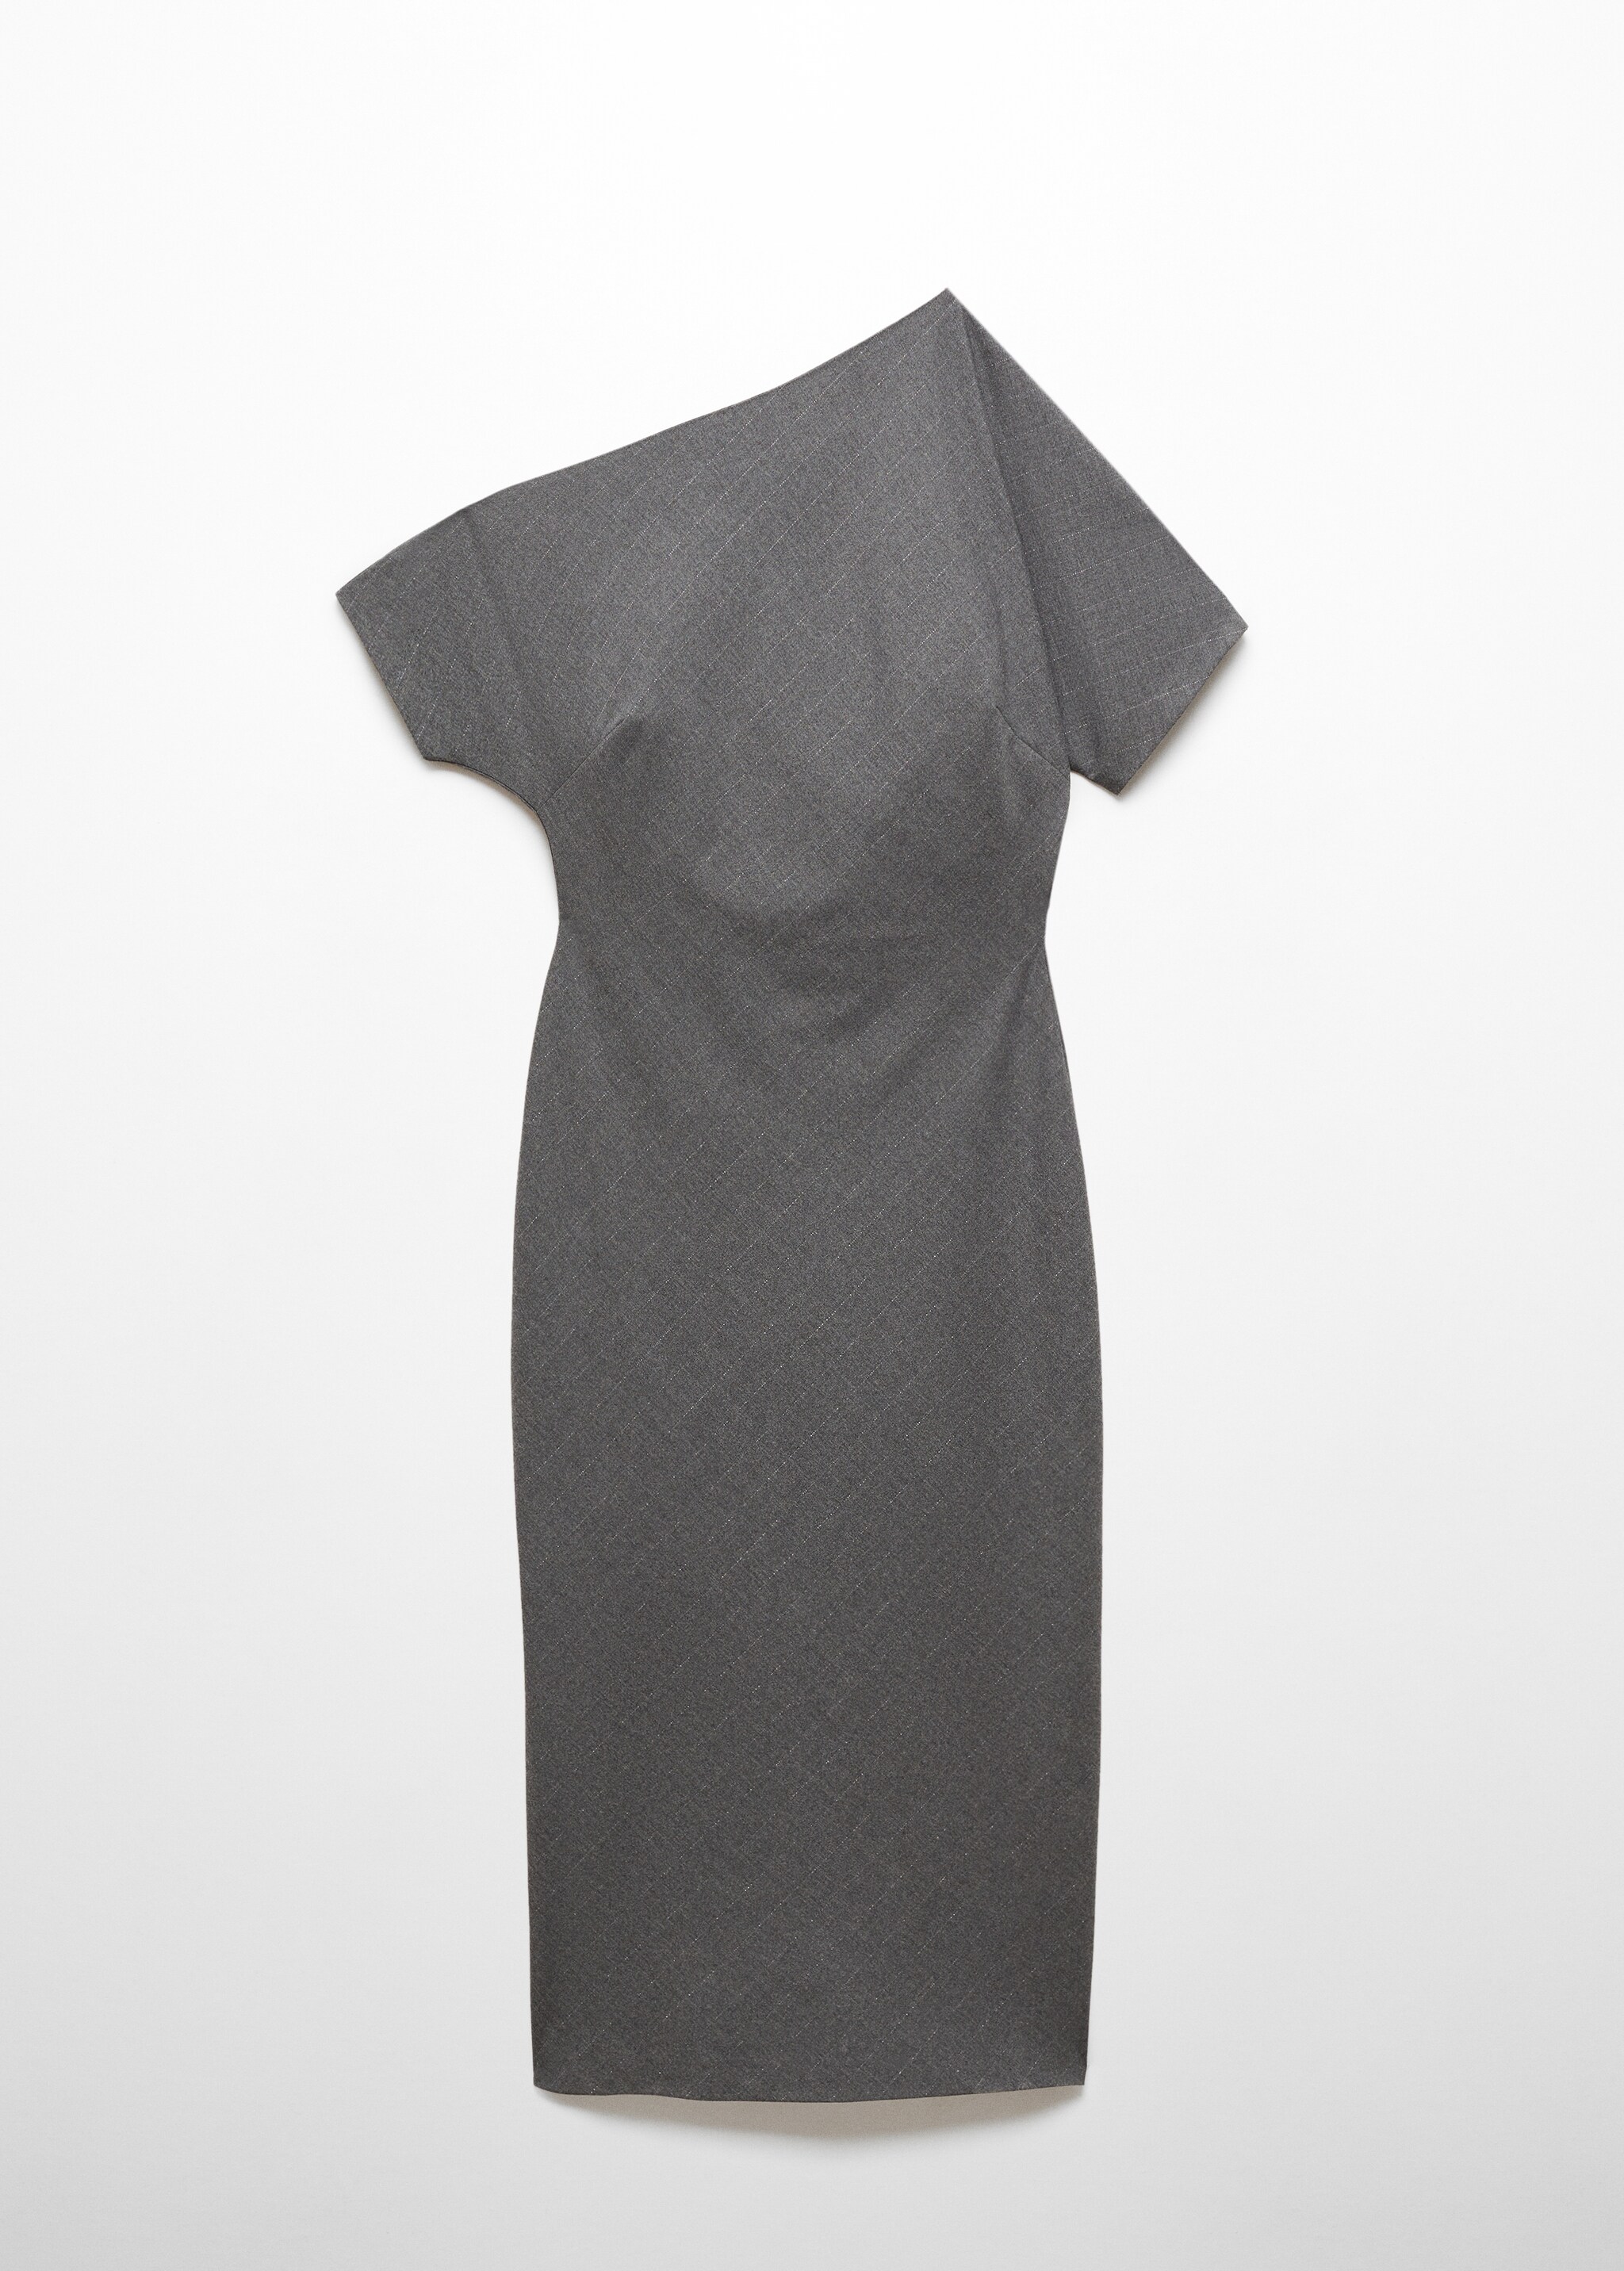 Асимметричное платье с боковым разрезом - Изделие без модели